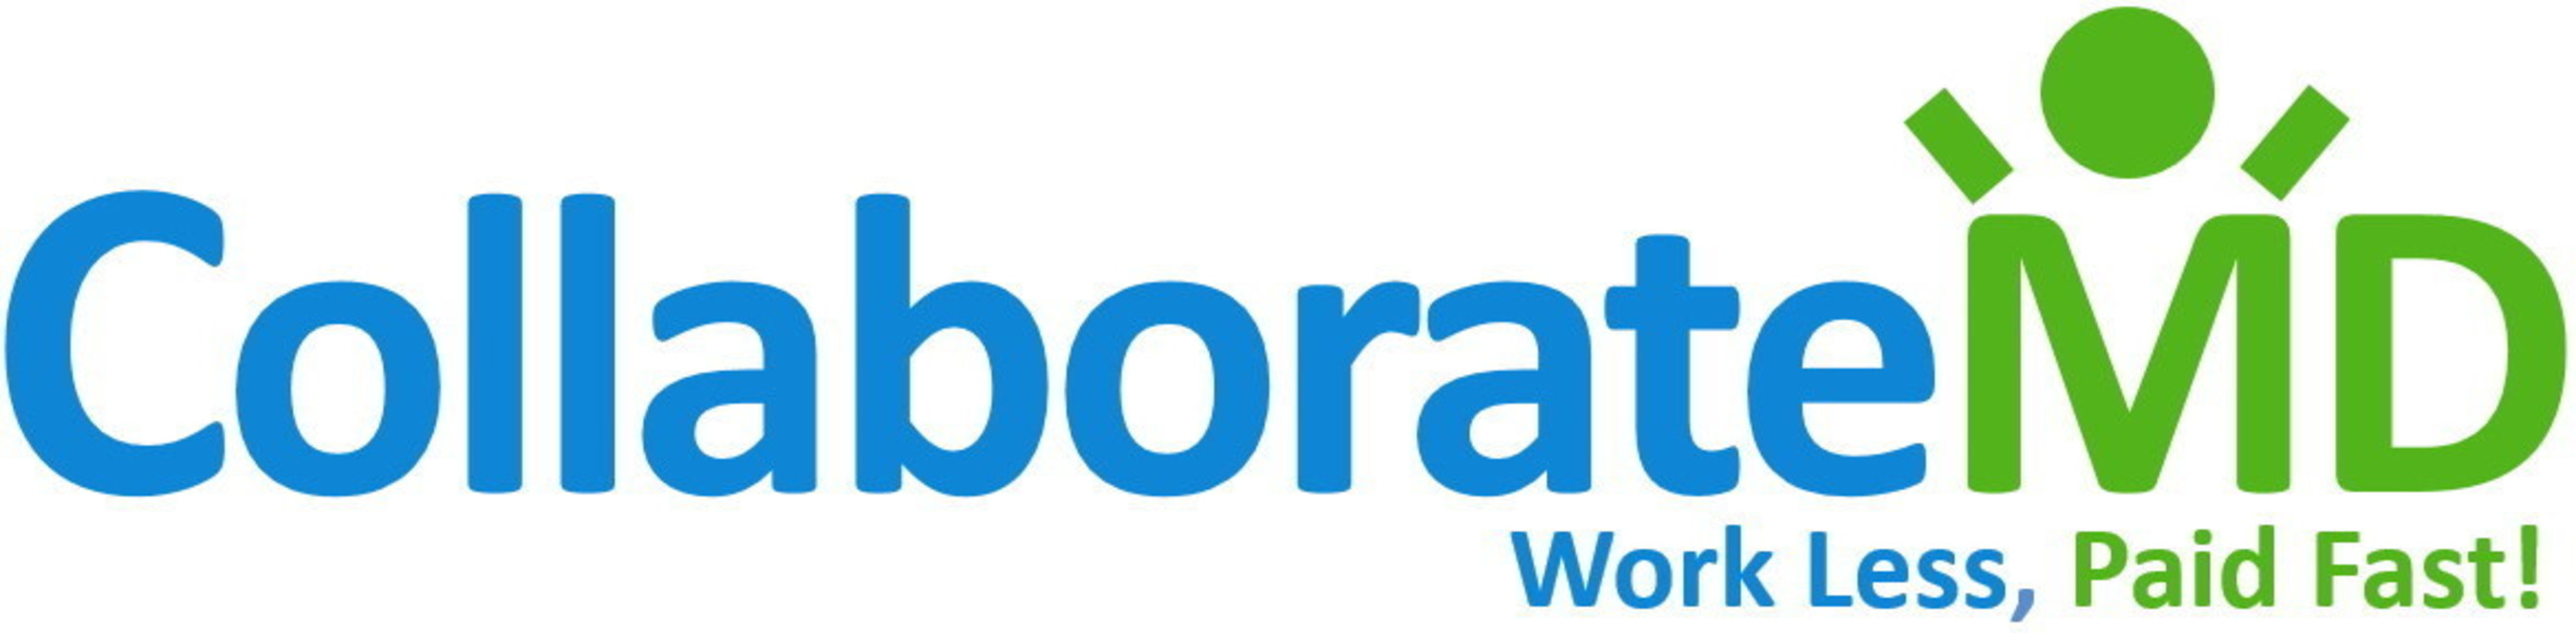 CollaborateMD Logo (PRNewsFoto/CollaborateMD)